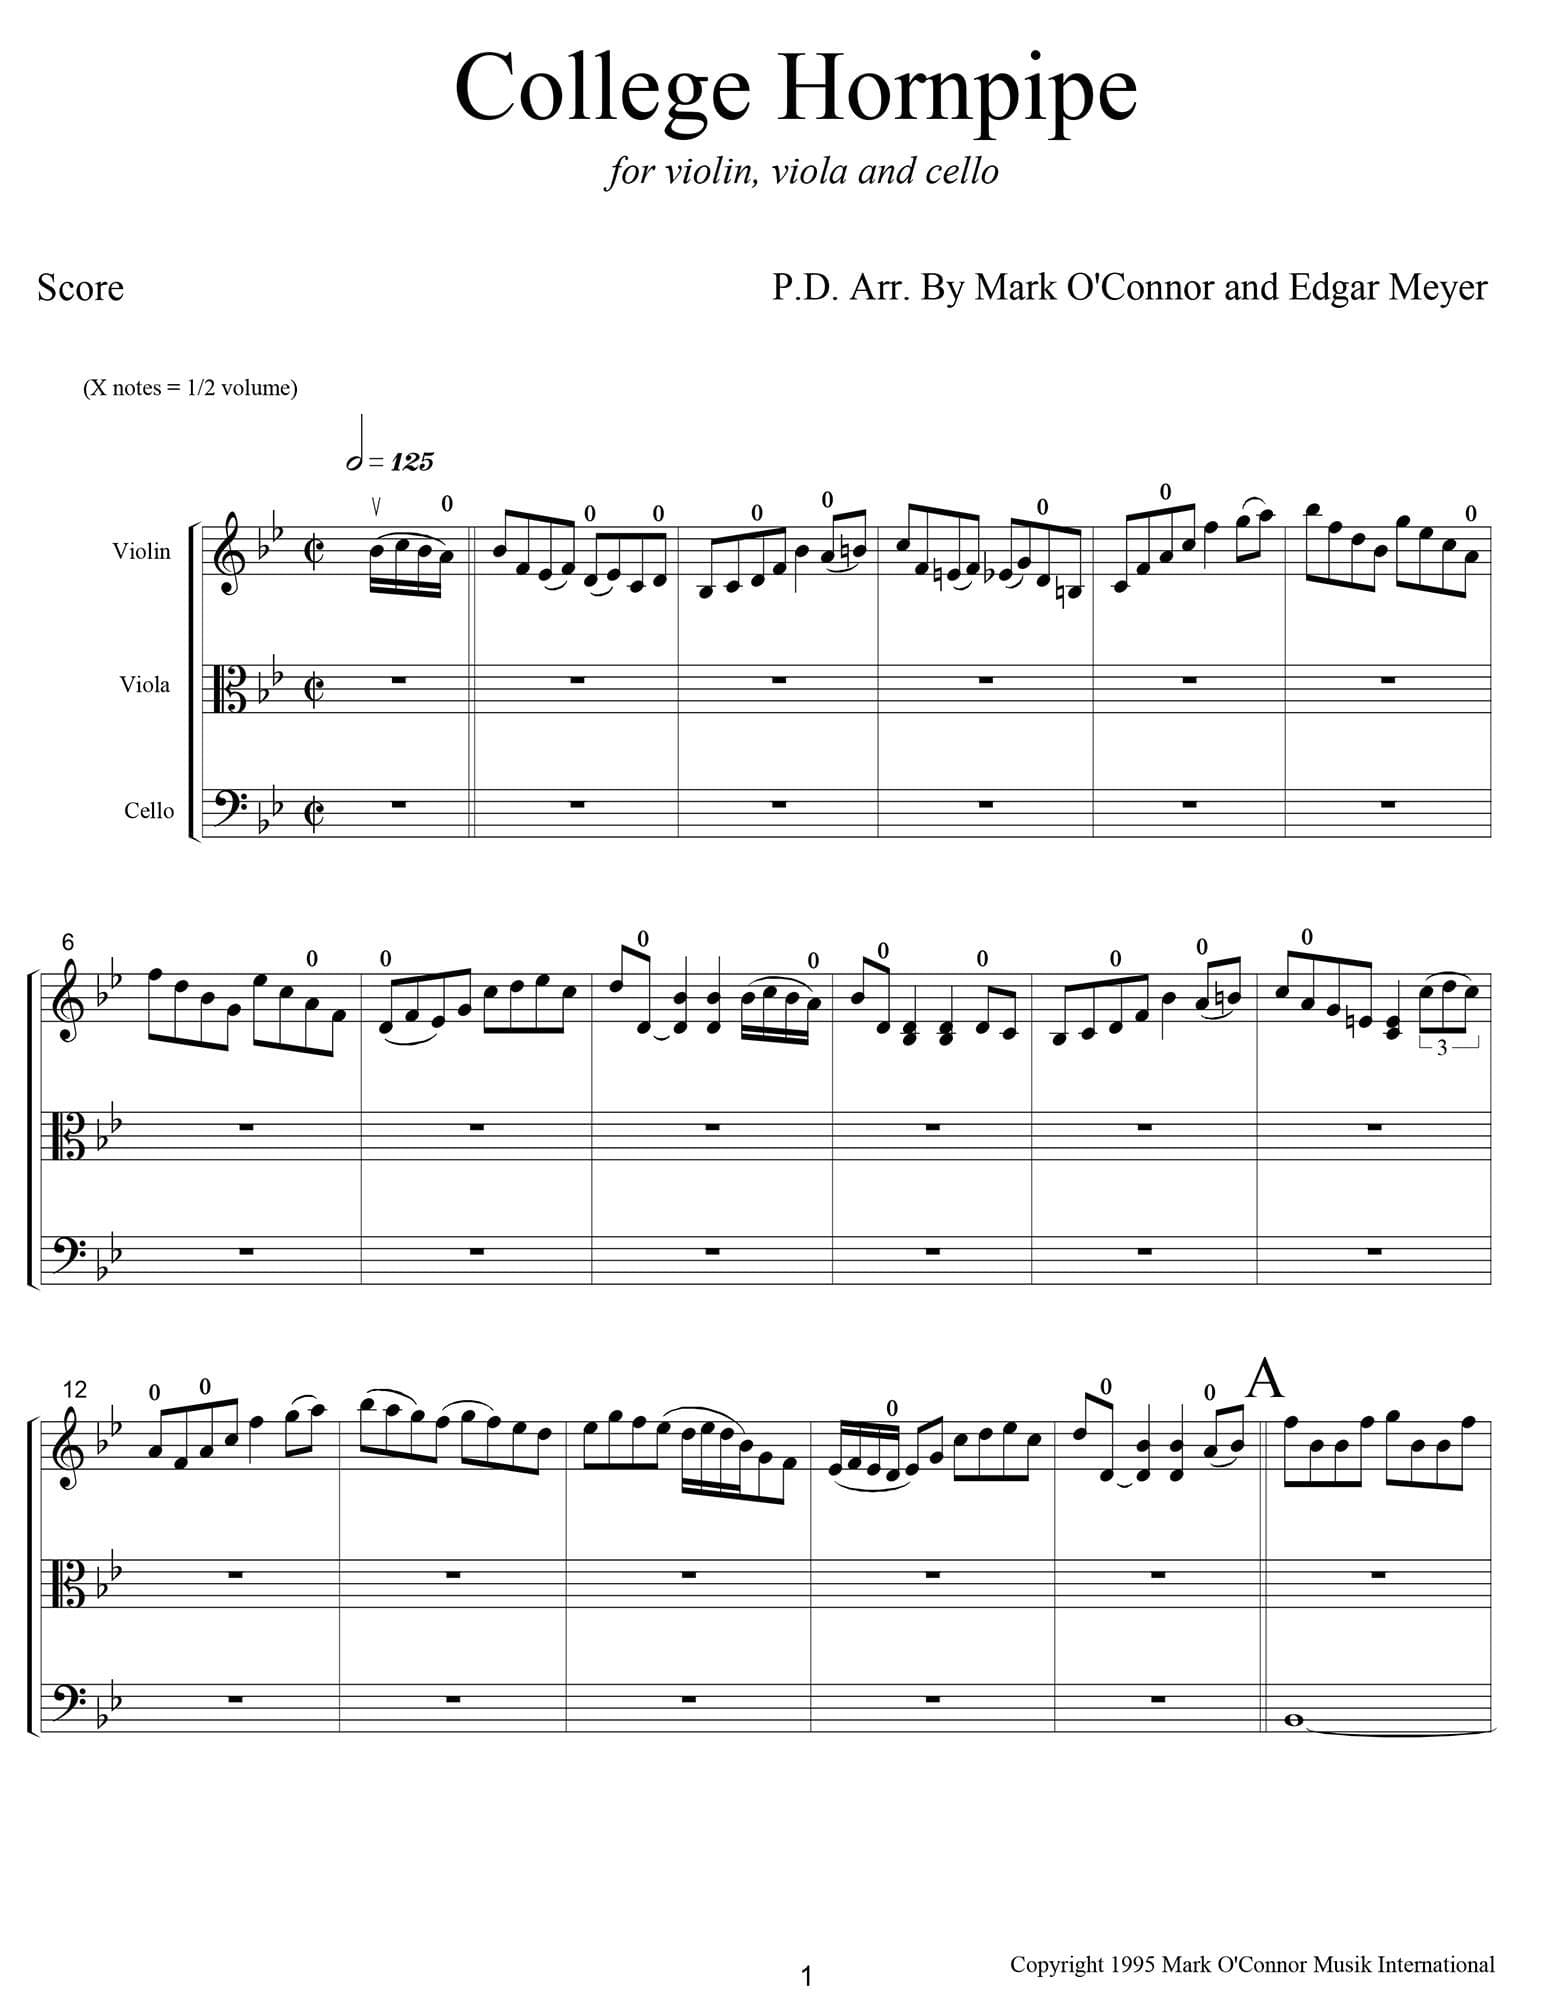 O'Connor, Mark - College Hornpipe for Violin, Viola, and Cello - Score - Digital Download